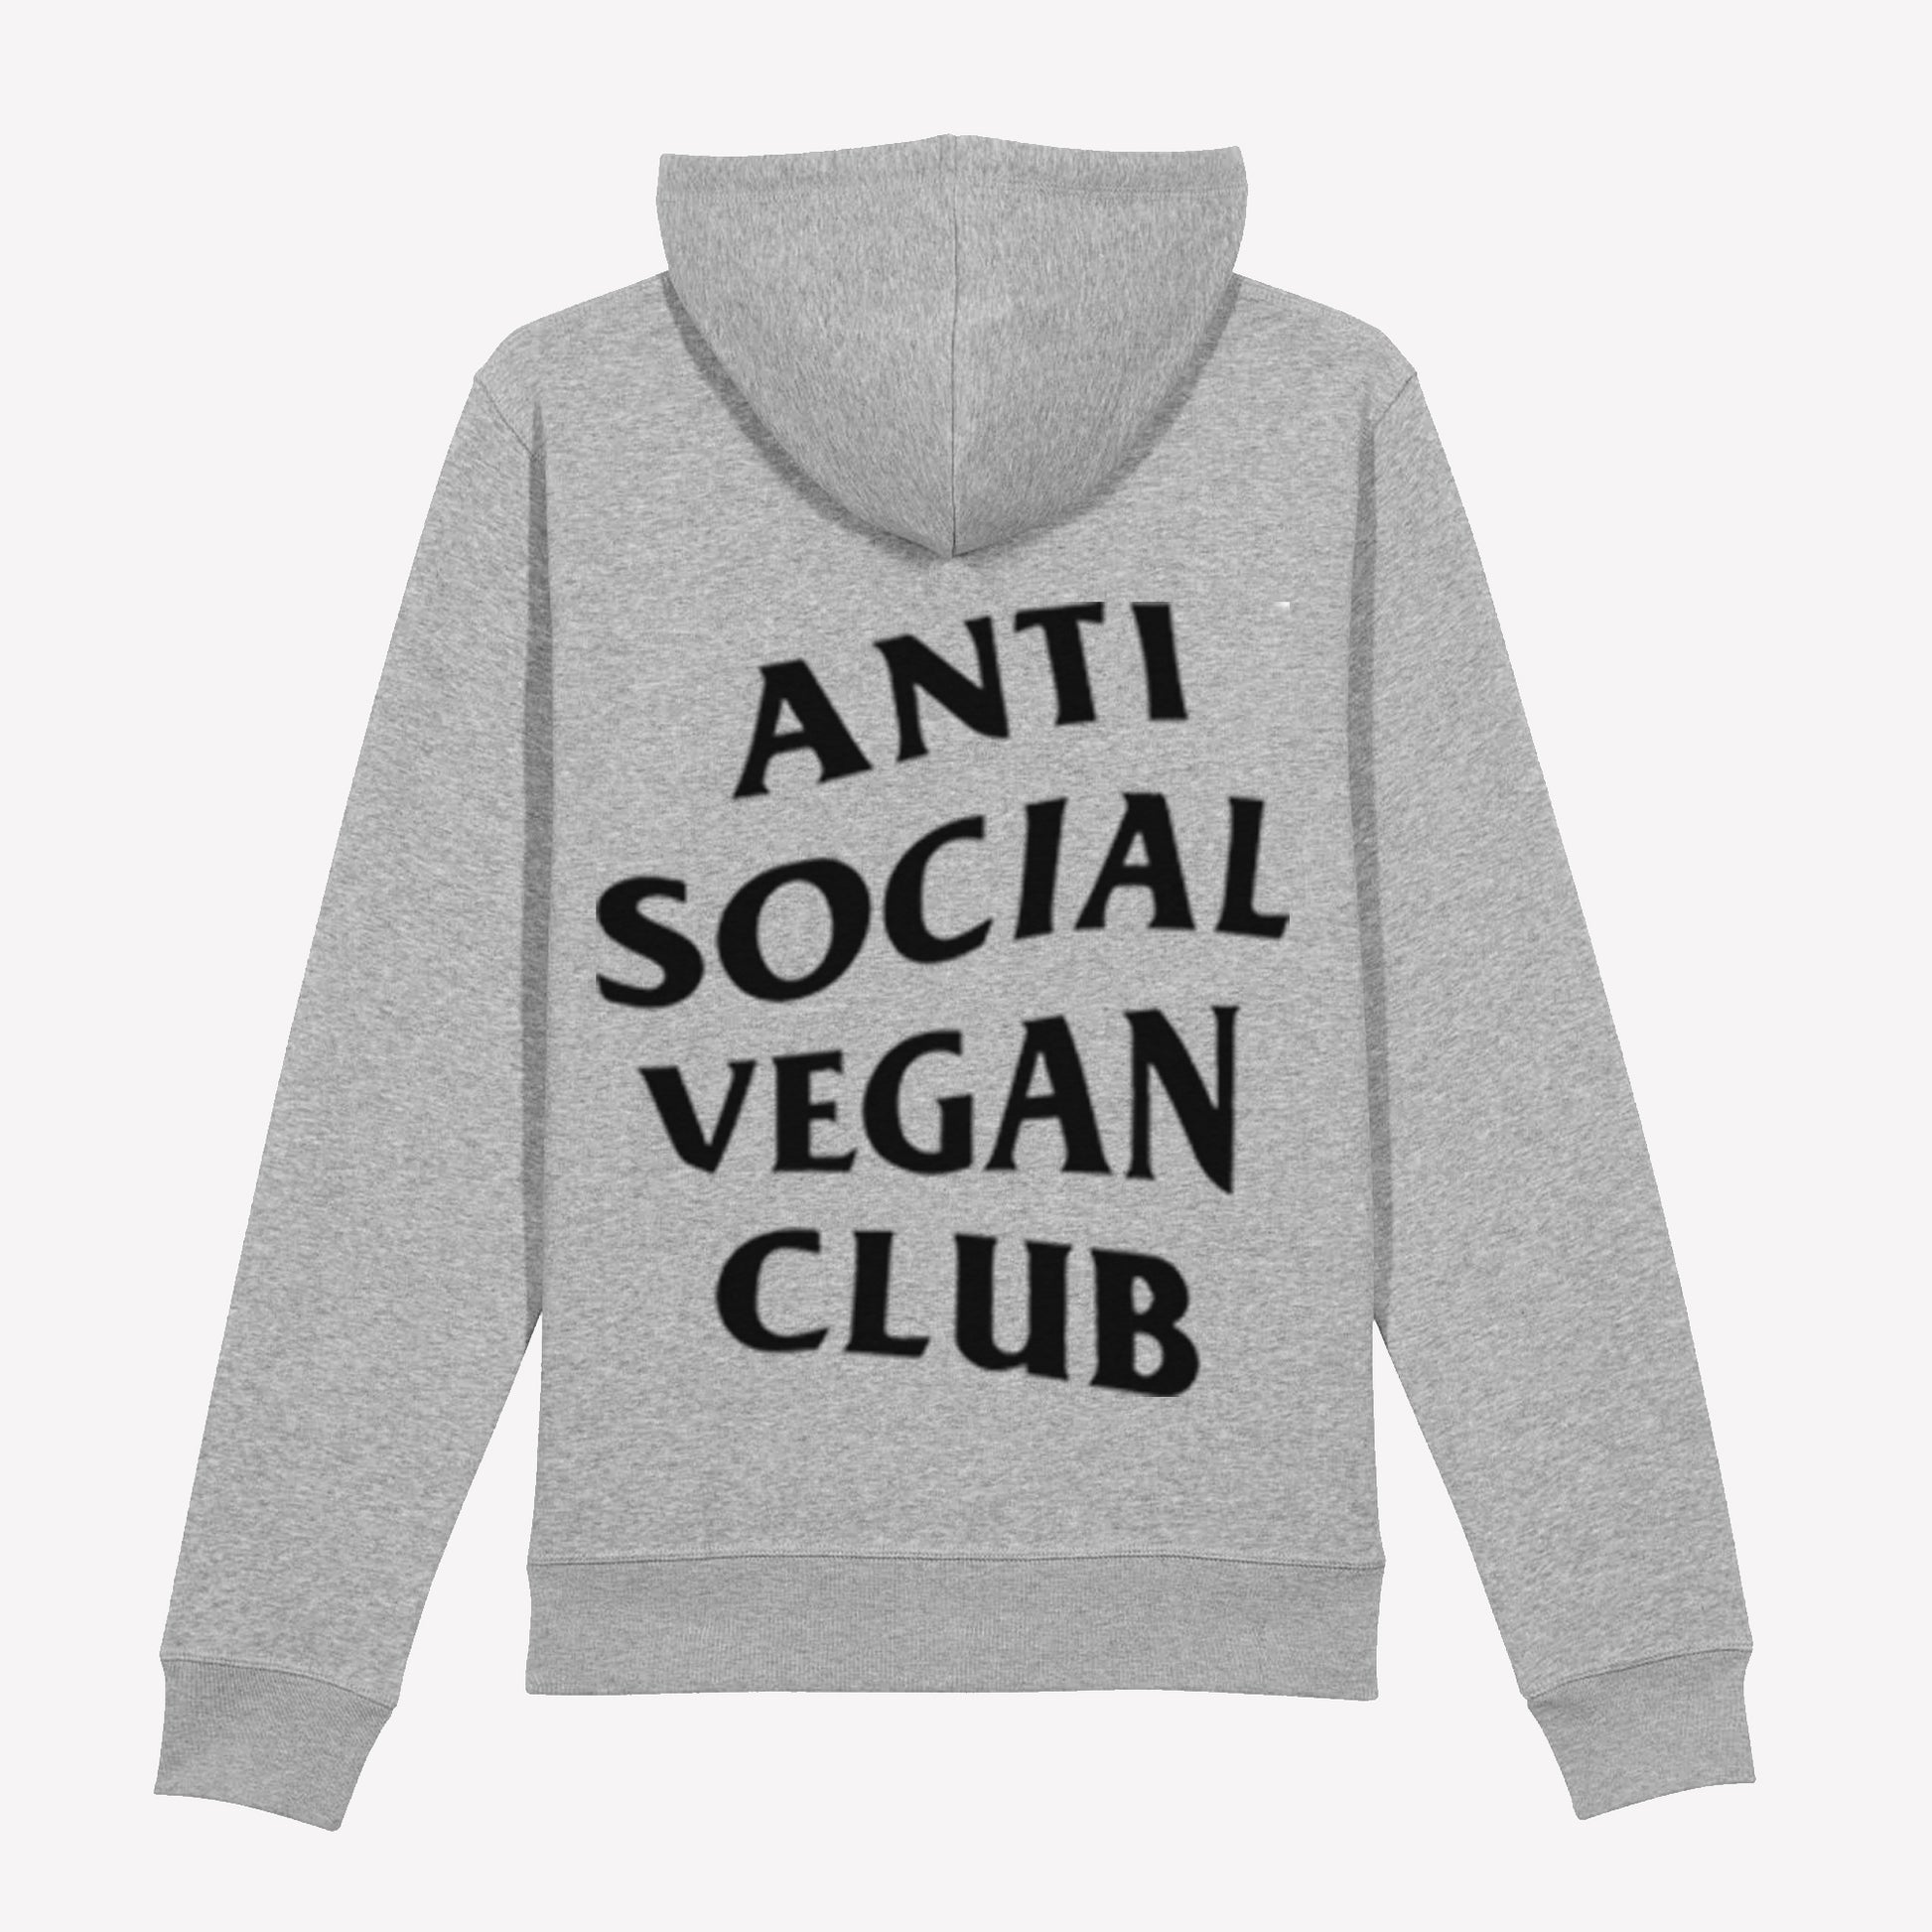 Anti Social Vegan Club Pullover Hoodie Grey - Anti Social Vegan Club